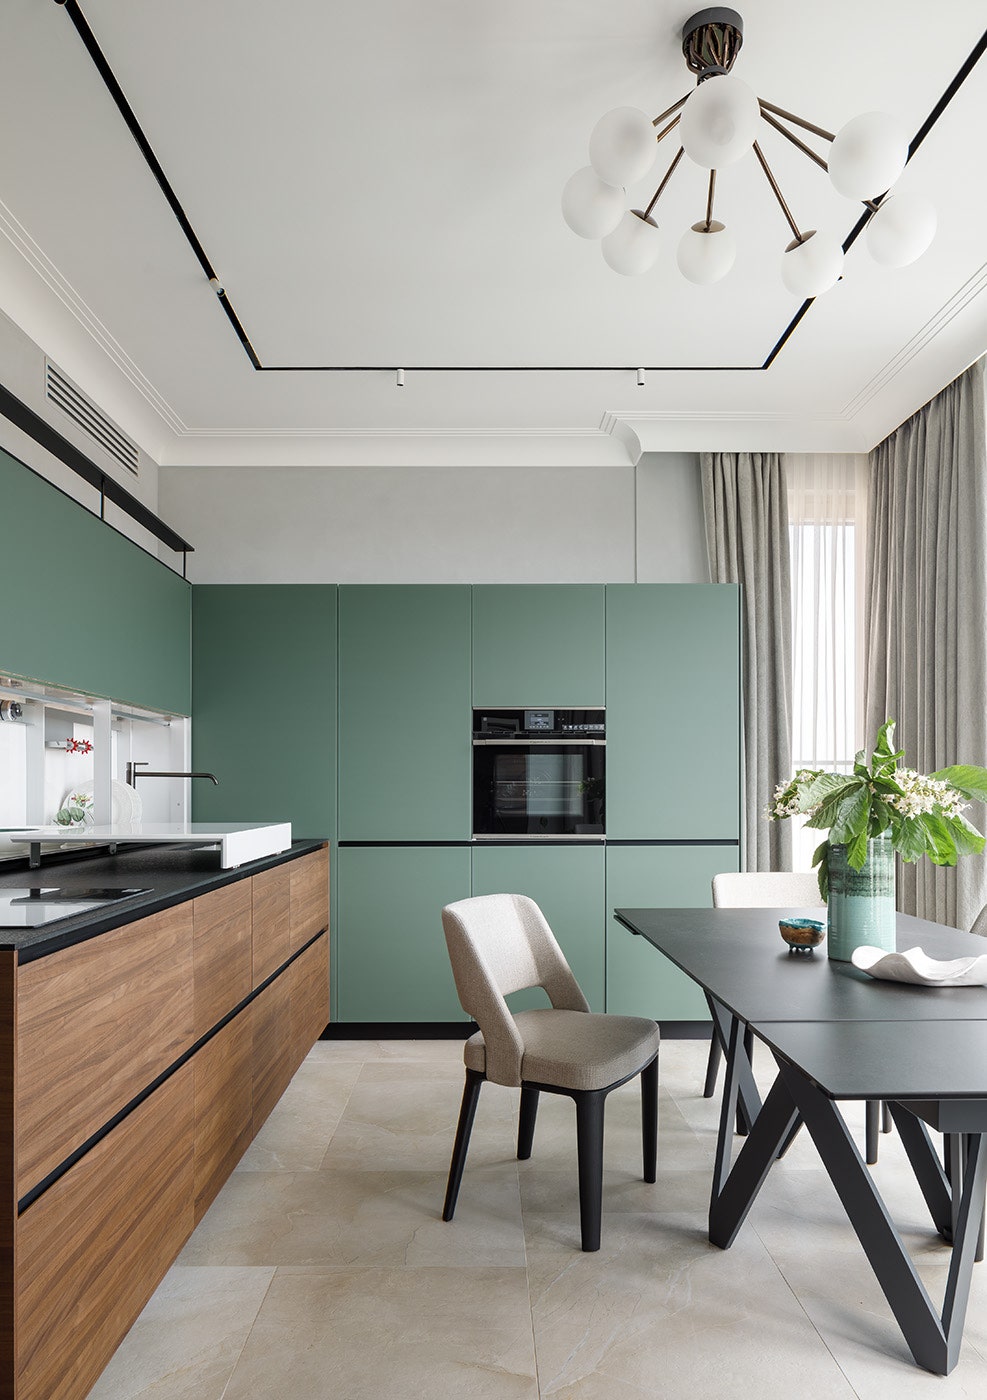 Квартира с видом на Новую Голландию 137 м². Кухня Valcucine с удобной дополнительной поверхностью и раздвижным фасадом...